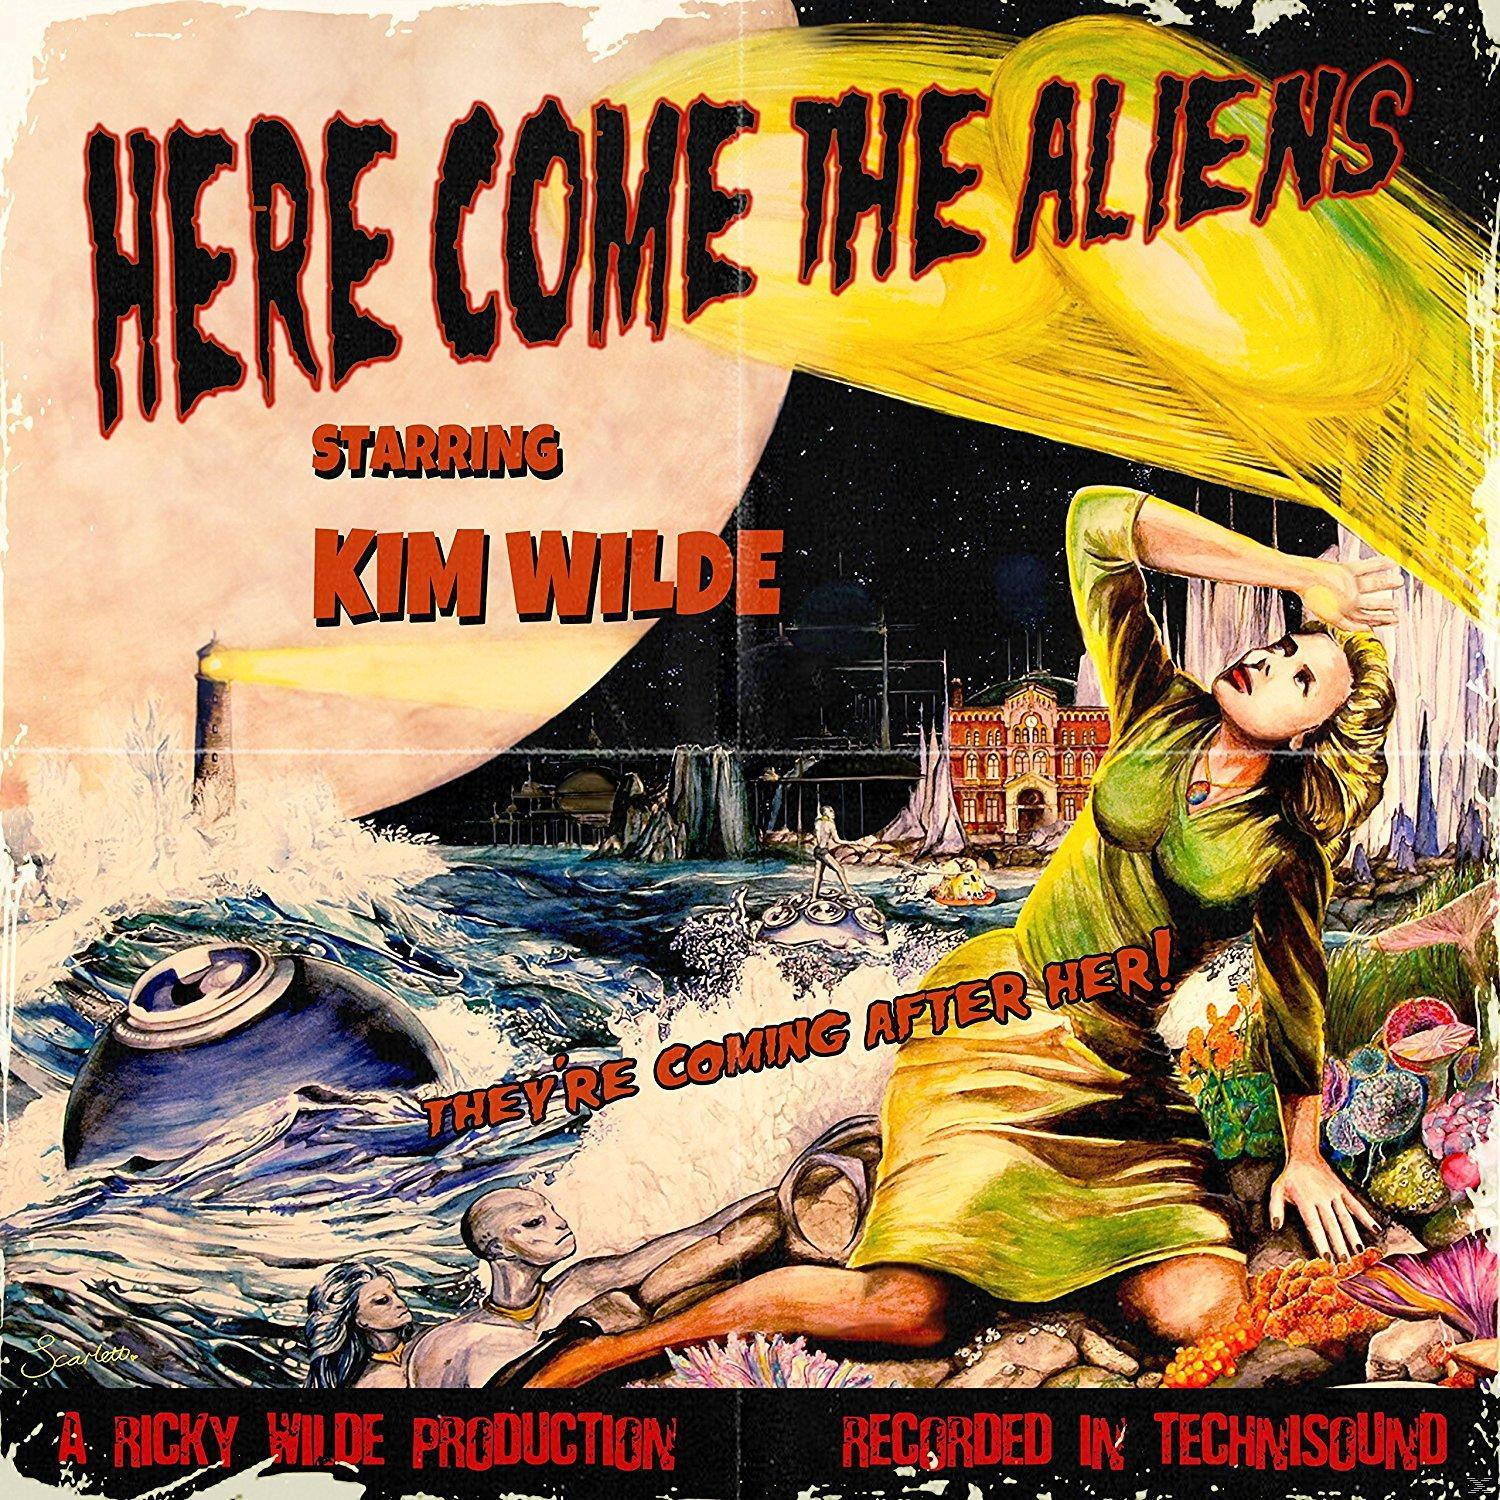 Kim Wilde The Here (CD) - Come Aliens 